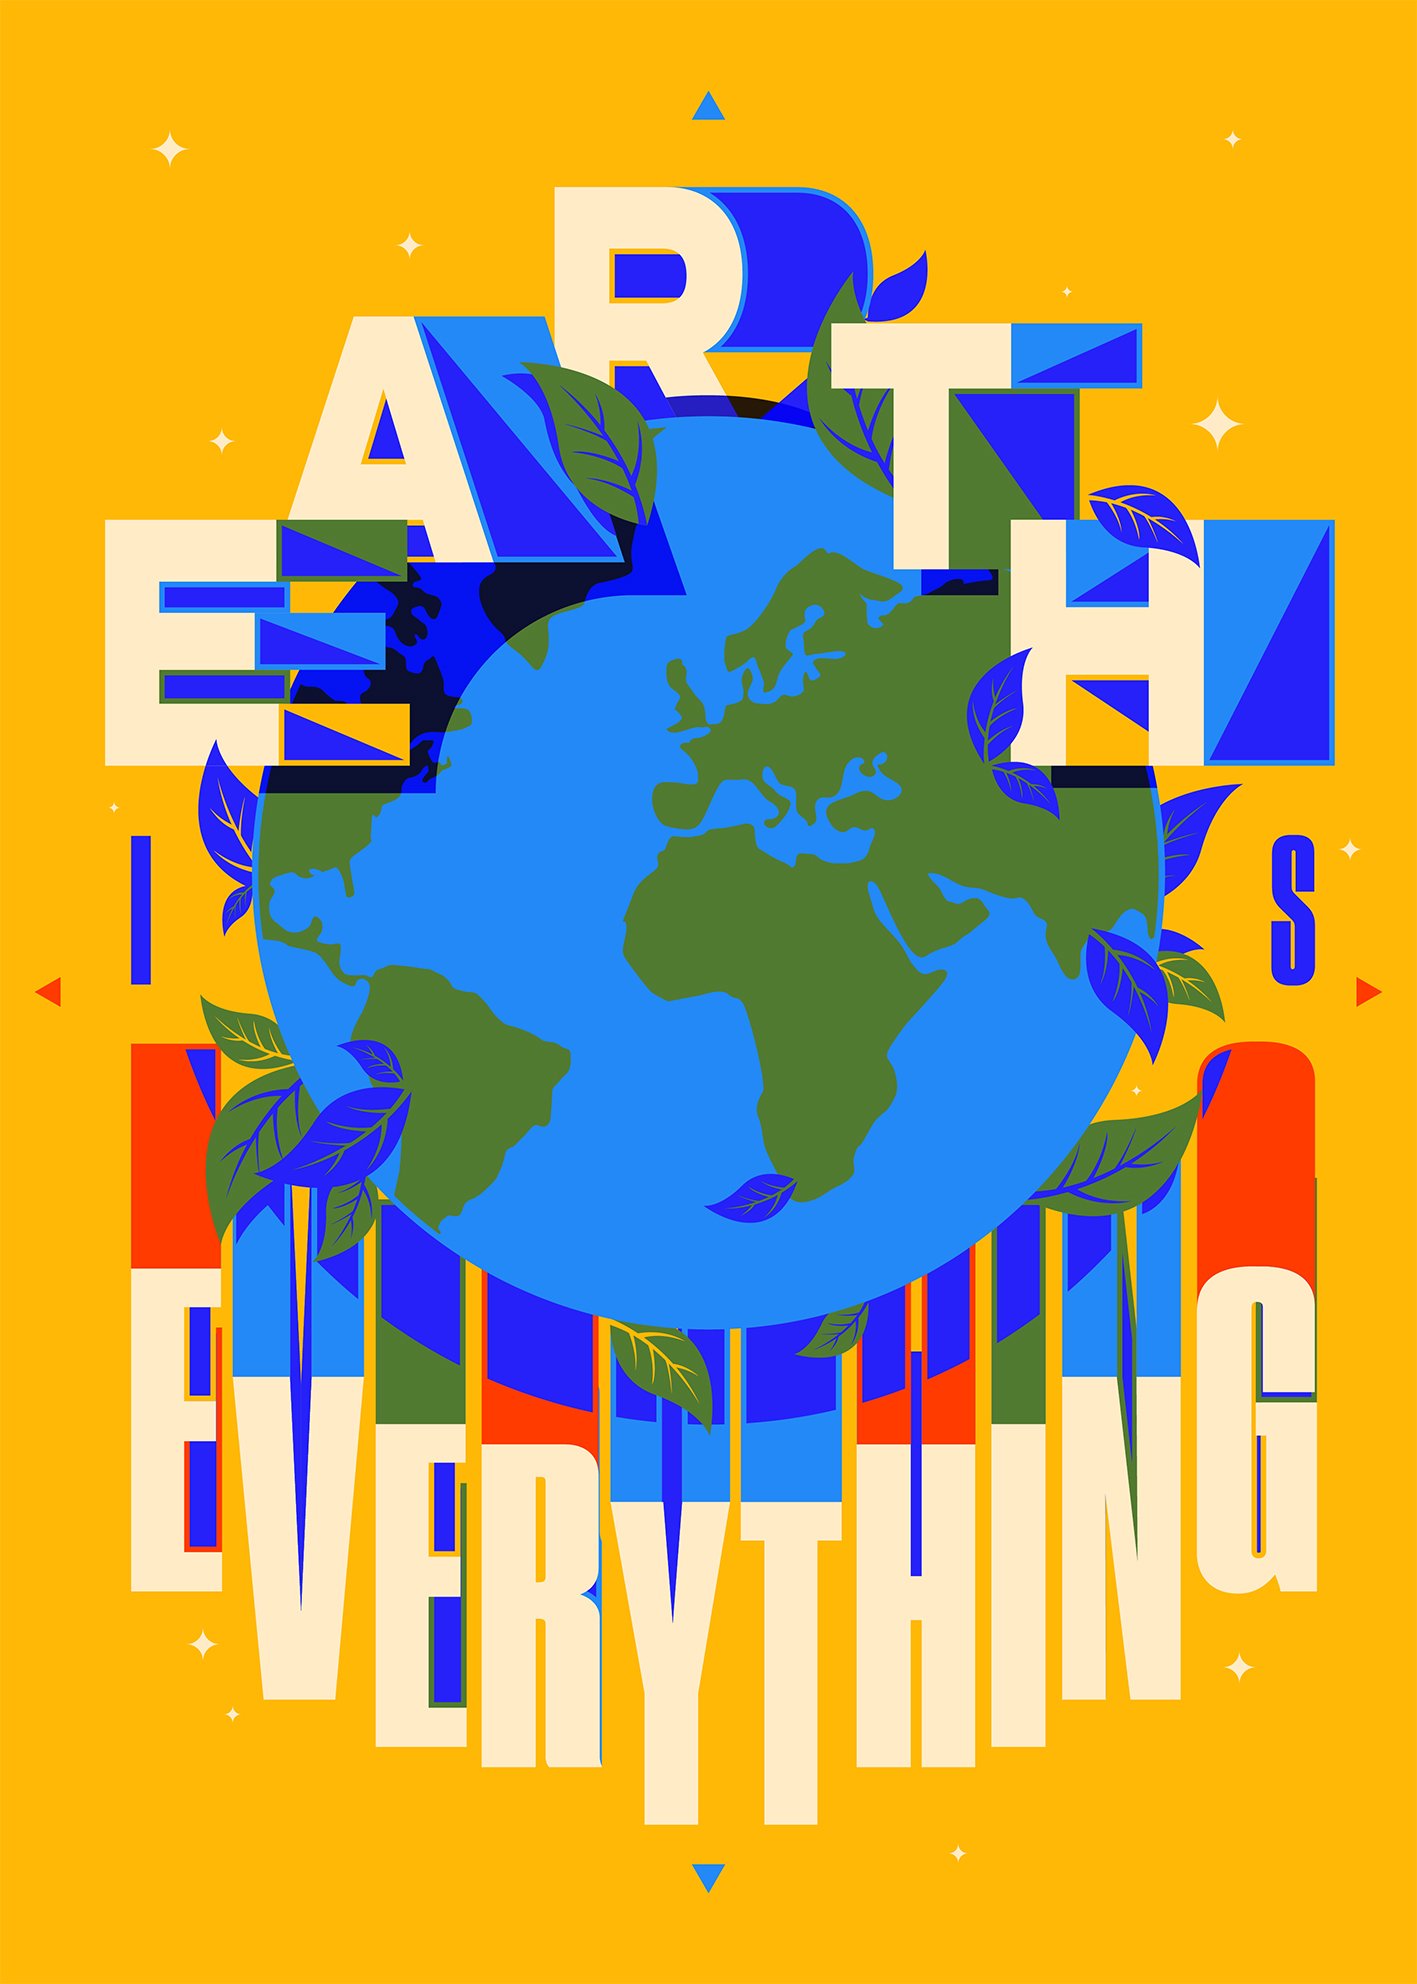 Earth_is_everything_HW-01_lr.jpg